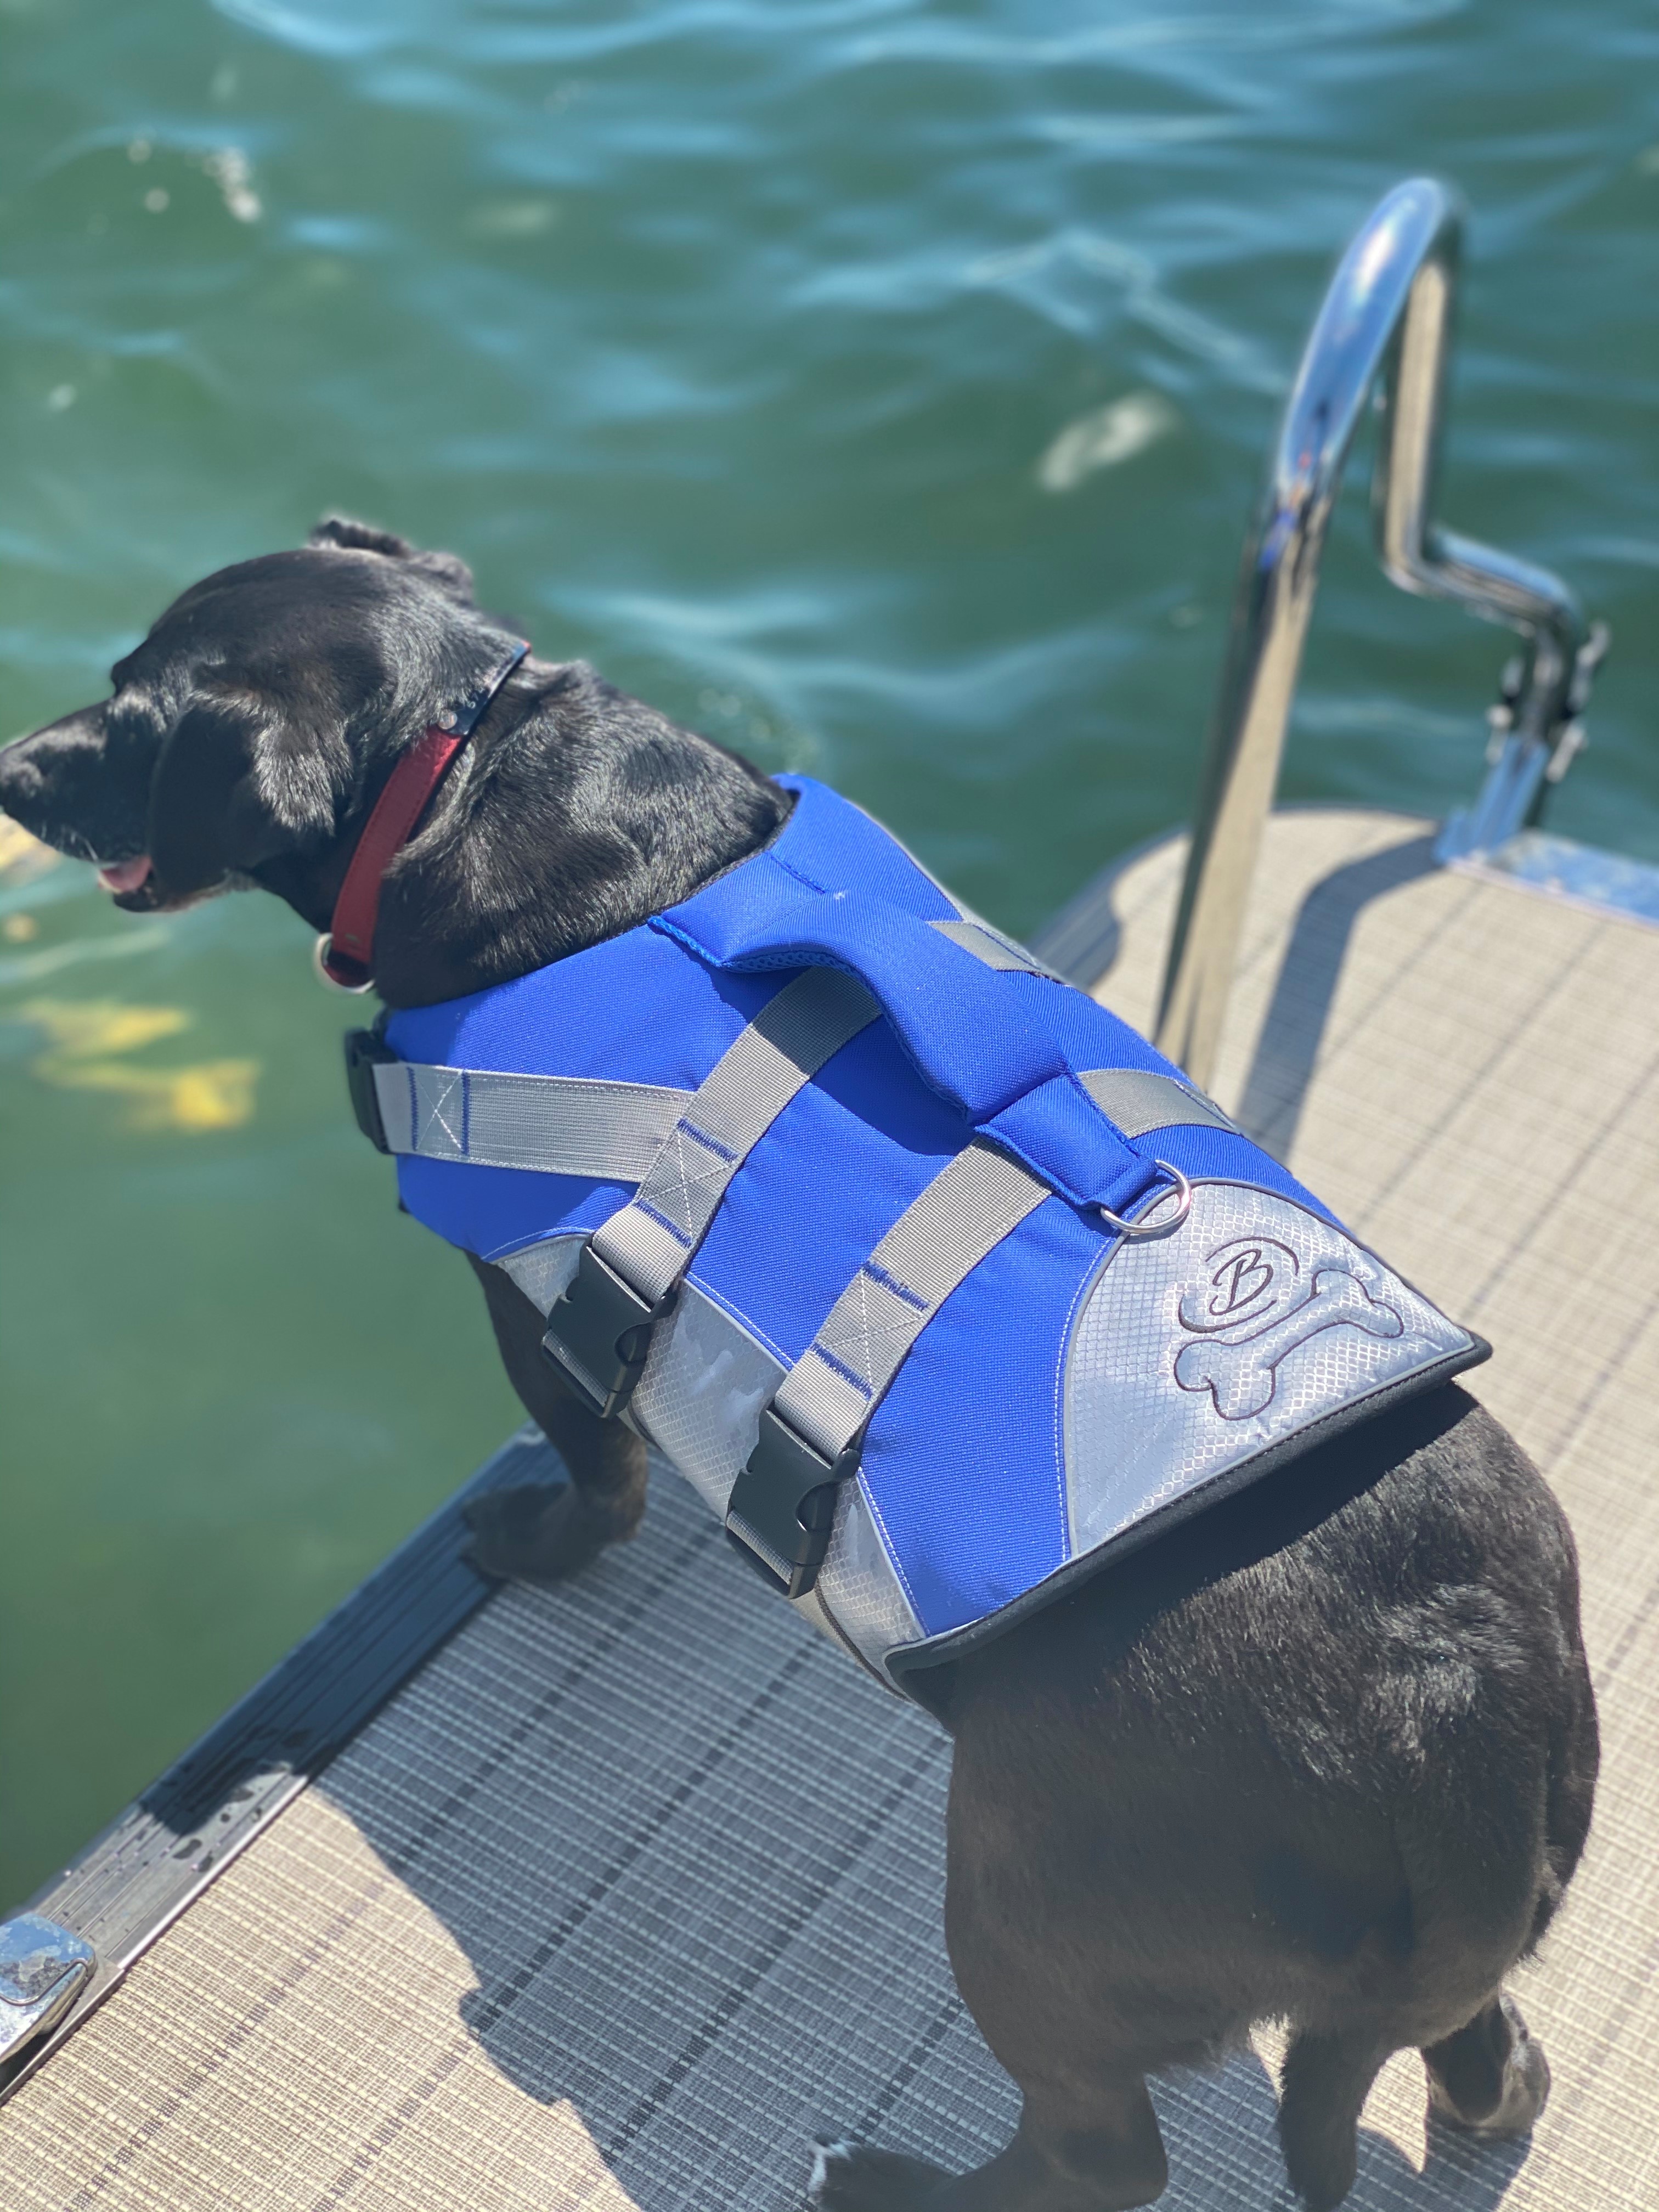 Dog life jacket